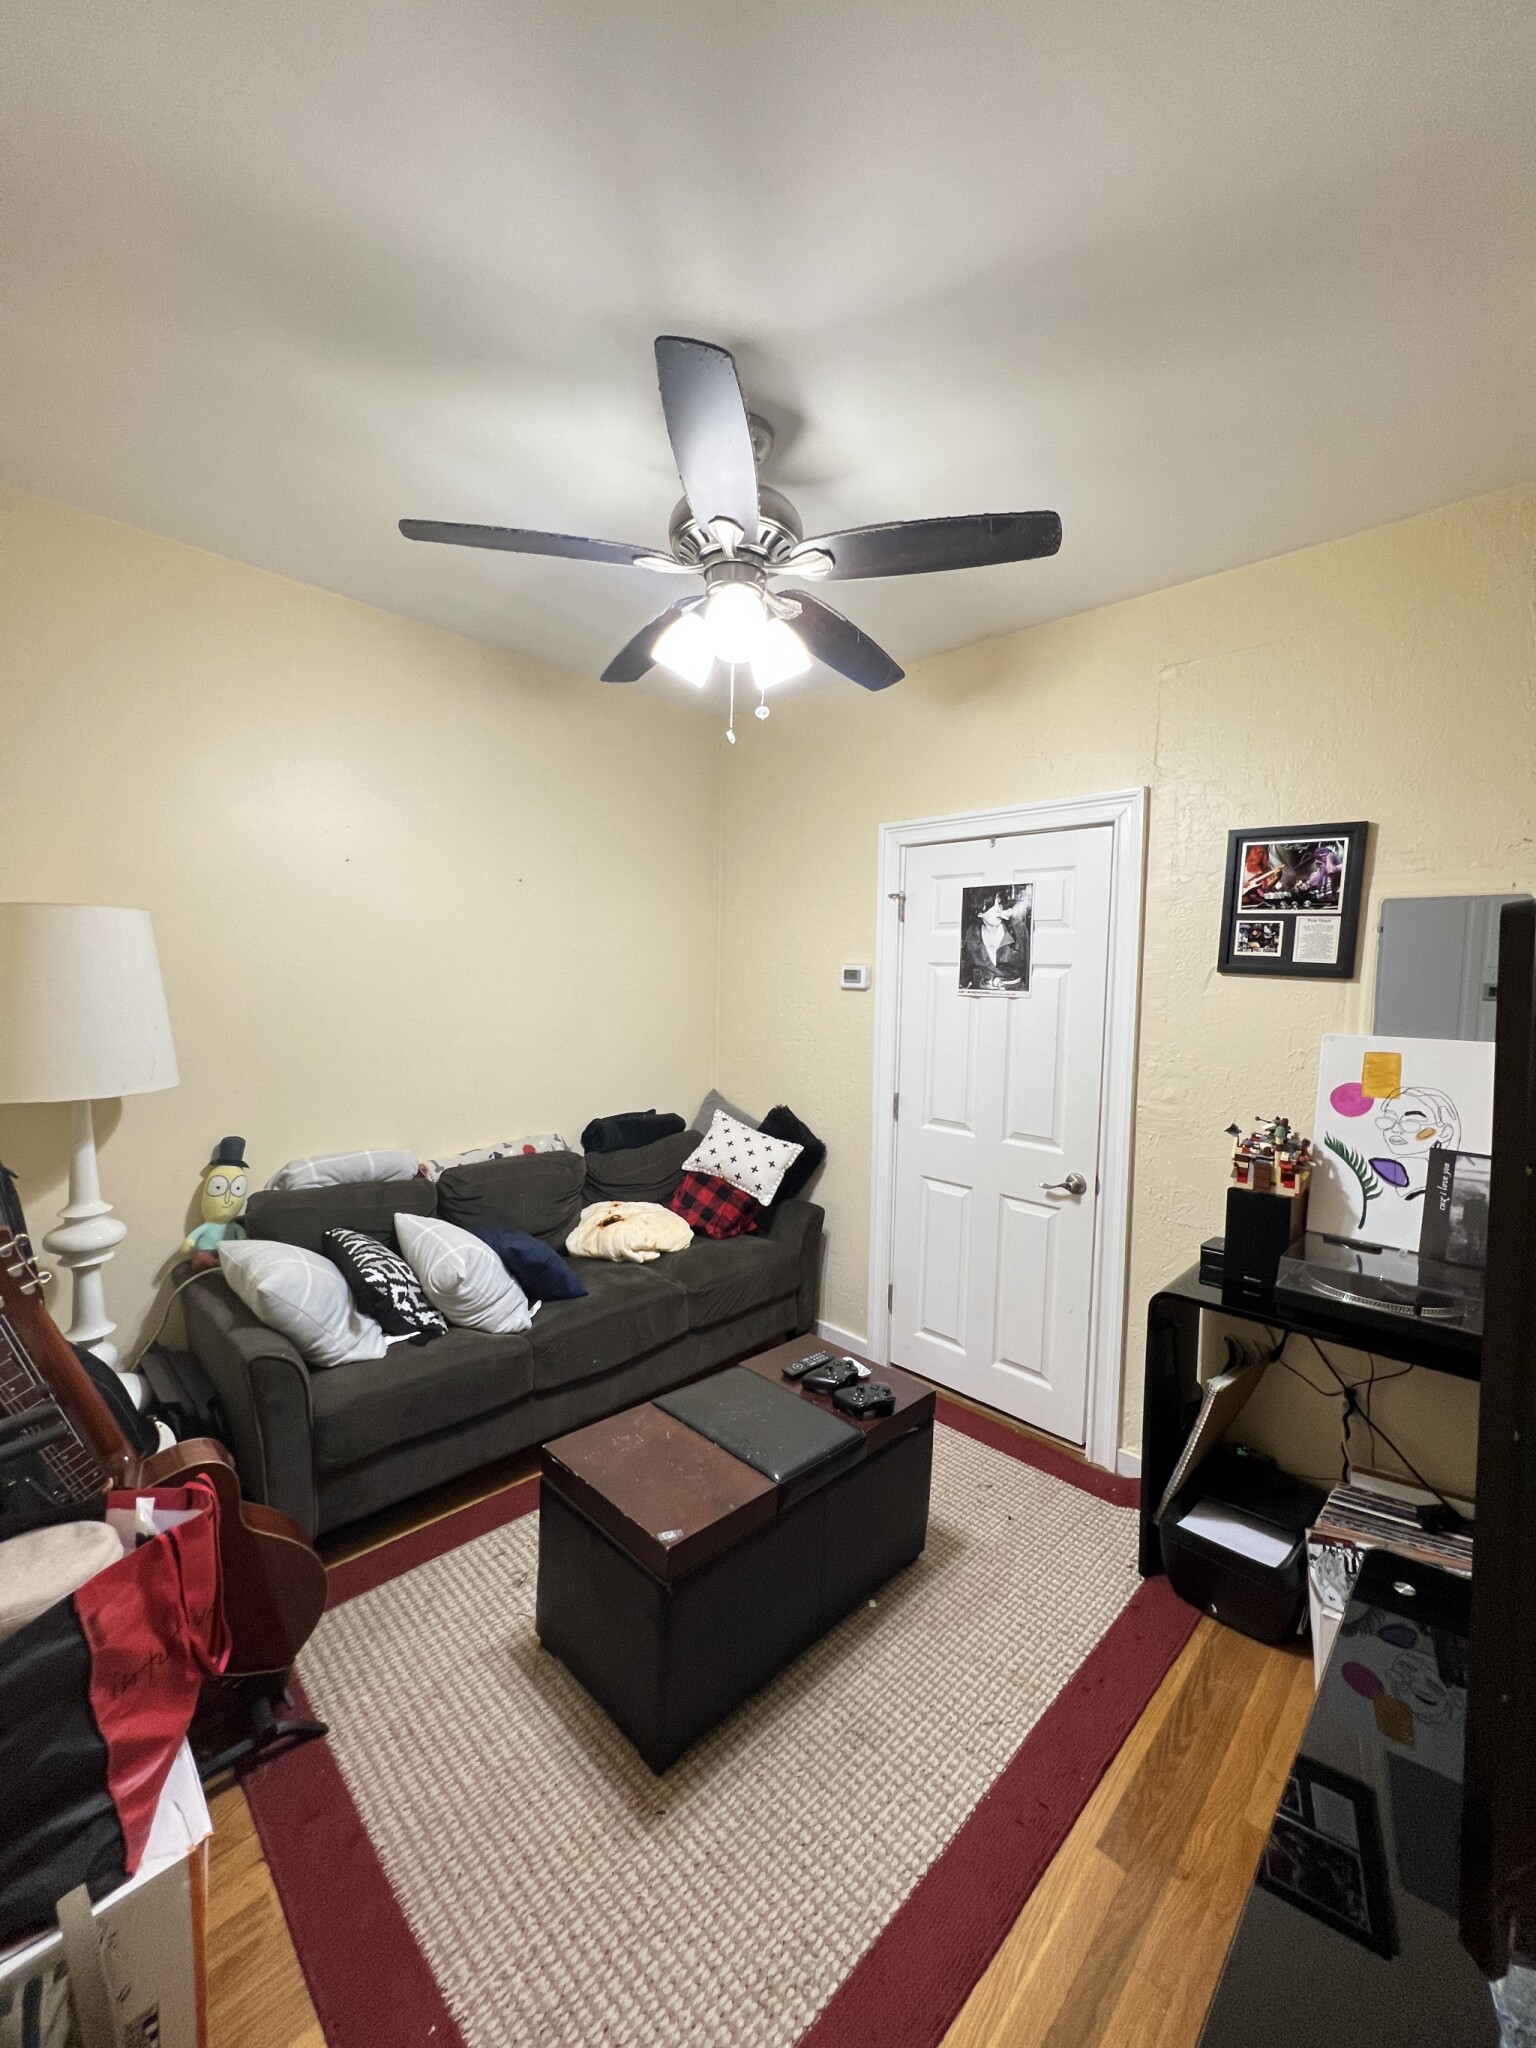 Photos of apartment on Otis,Somerville MA 02145